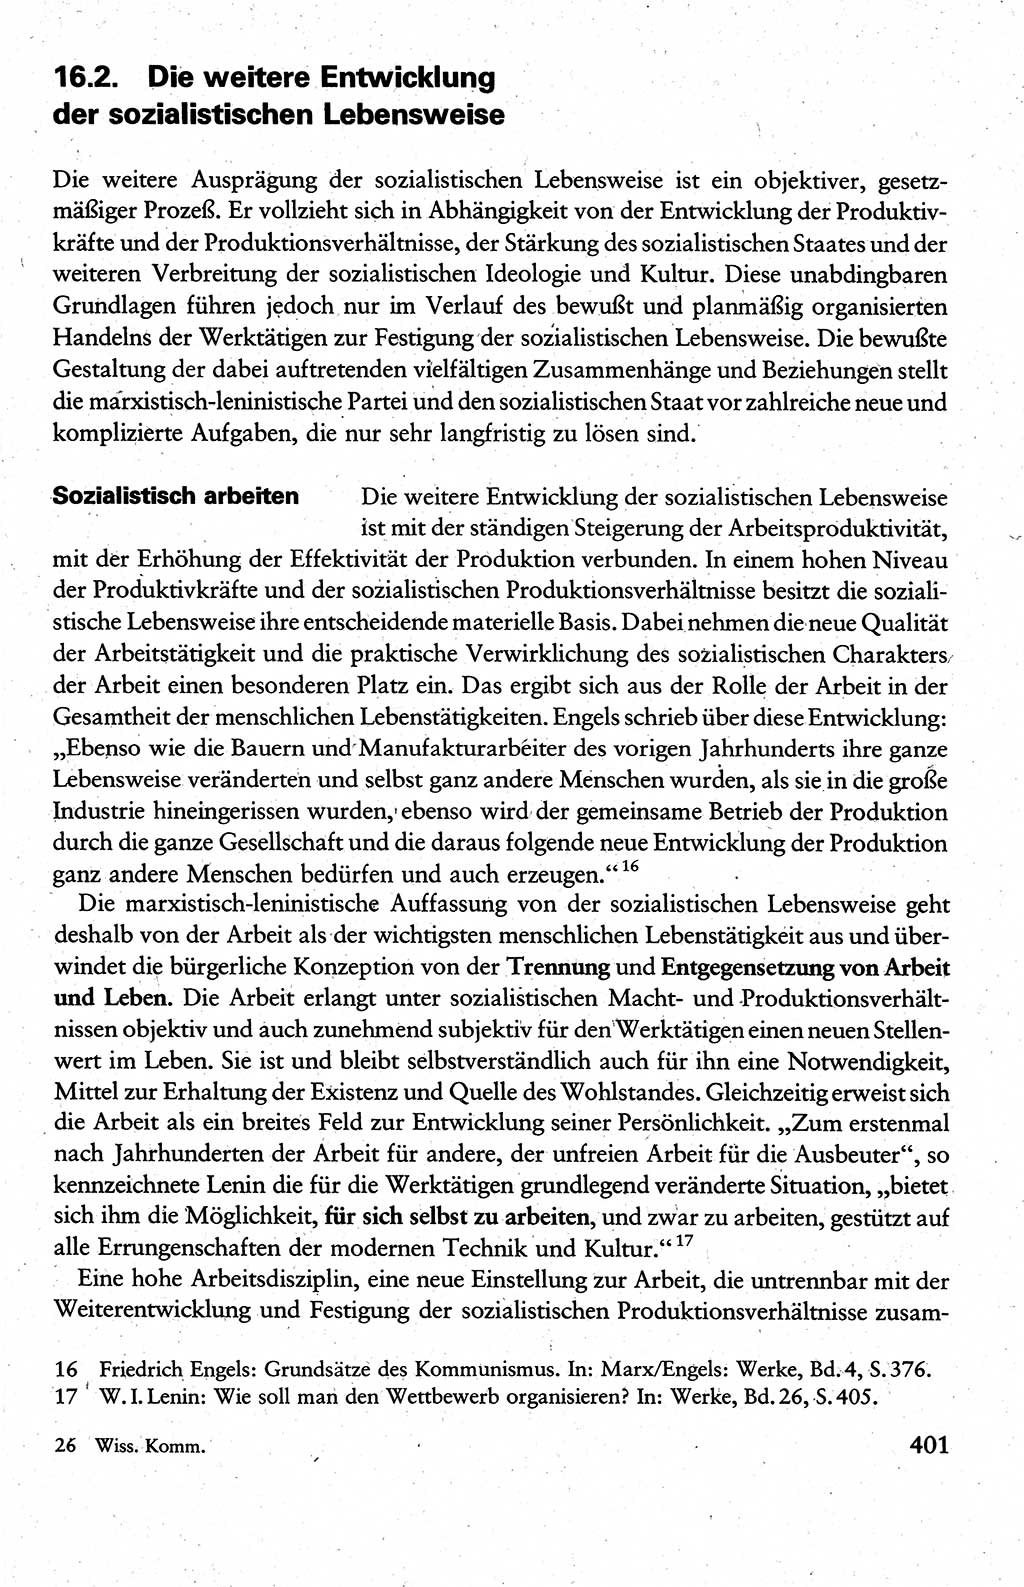 Wissenschaftlicher Kommunismus [Deutsche Demokratische Republik (DDR)], Lehrbuch für das marxistisch-leninistische Grundlagenstudium 1983, Seite 401 (Wiss. Komm. DDR Lb. 1983, S. 401)